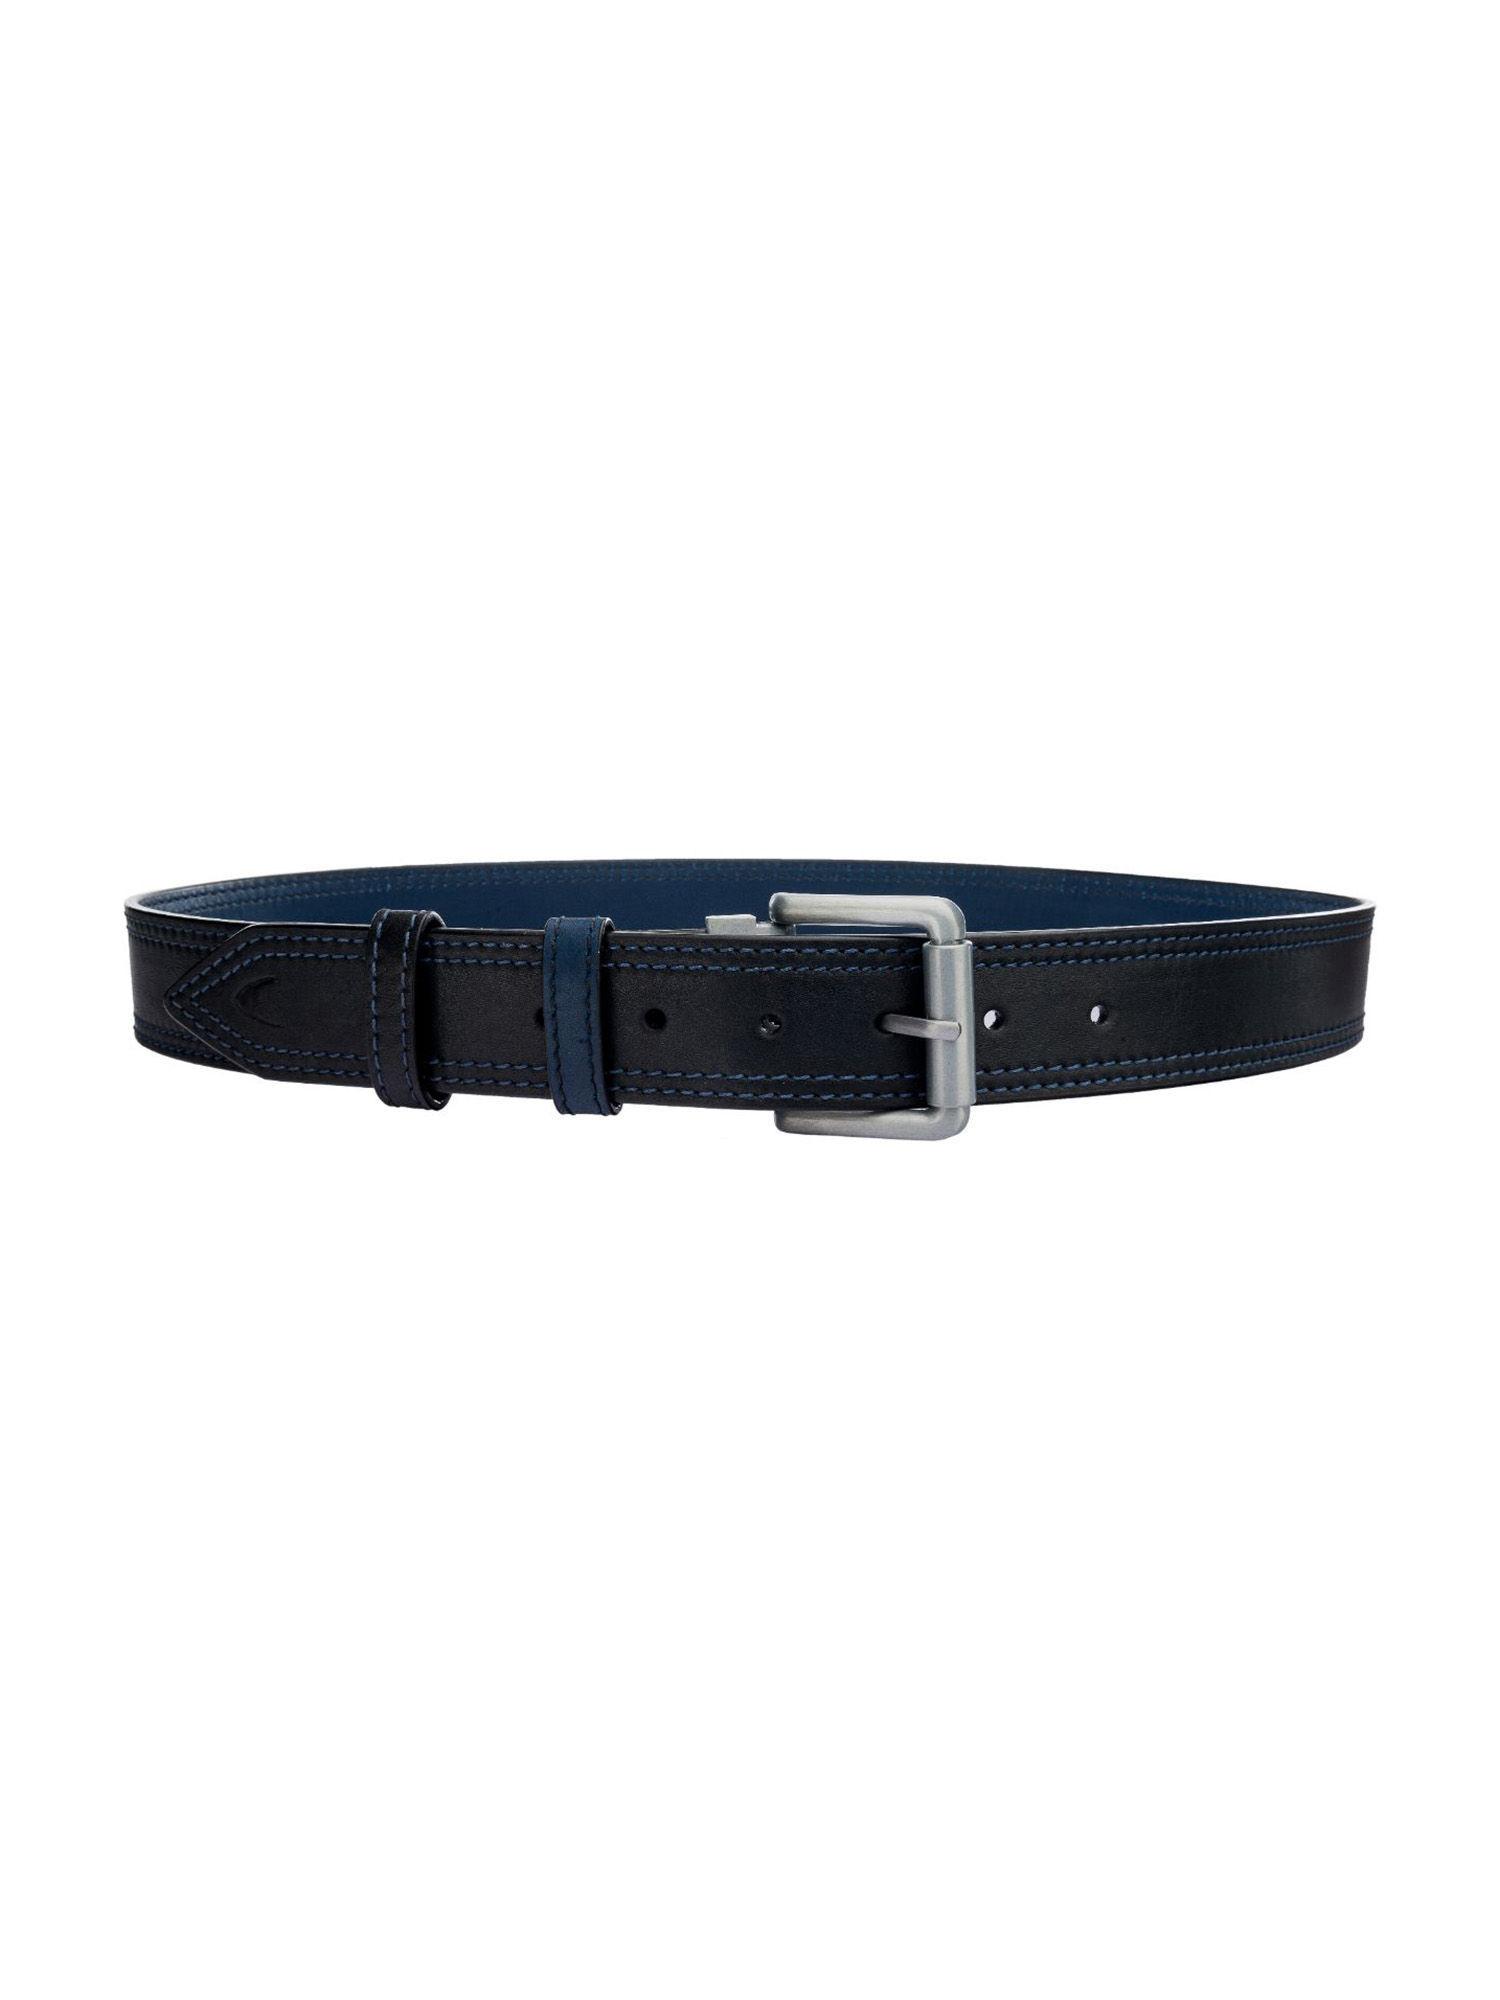 men's-belt-reversible-black